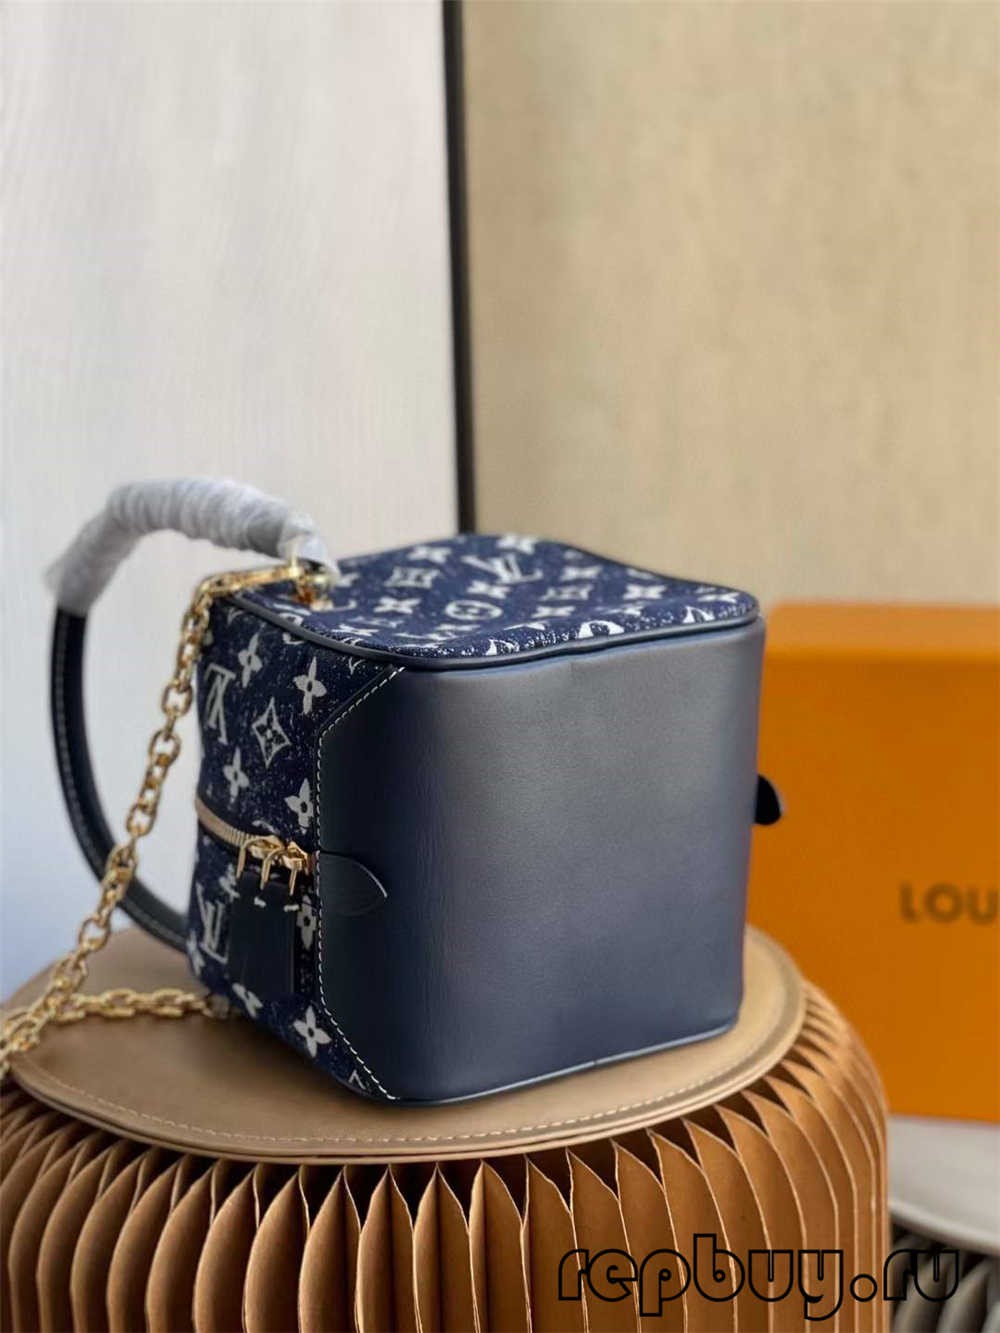 Louis Vuitton SQUARE soma M59611 augstākās kvalitātes reprodukcijas soma (atjaunināta 2022. gadā) — labākās kvalitātes viltotās Louis Vuitton somas tiešsaistes veikals, dizainera somas kopija ru